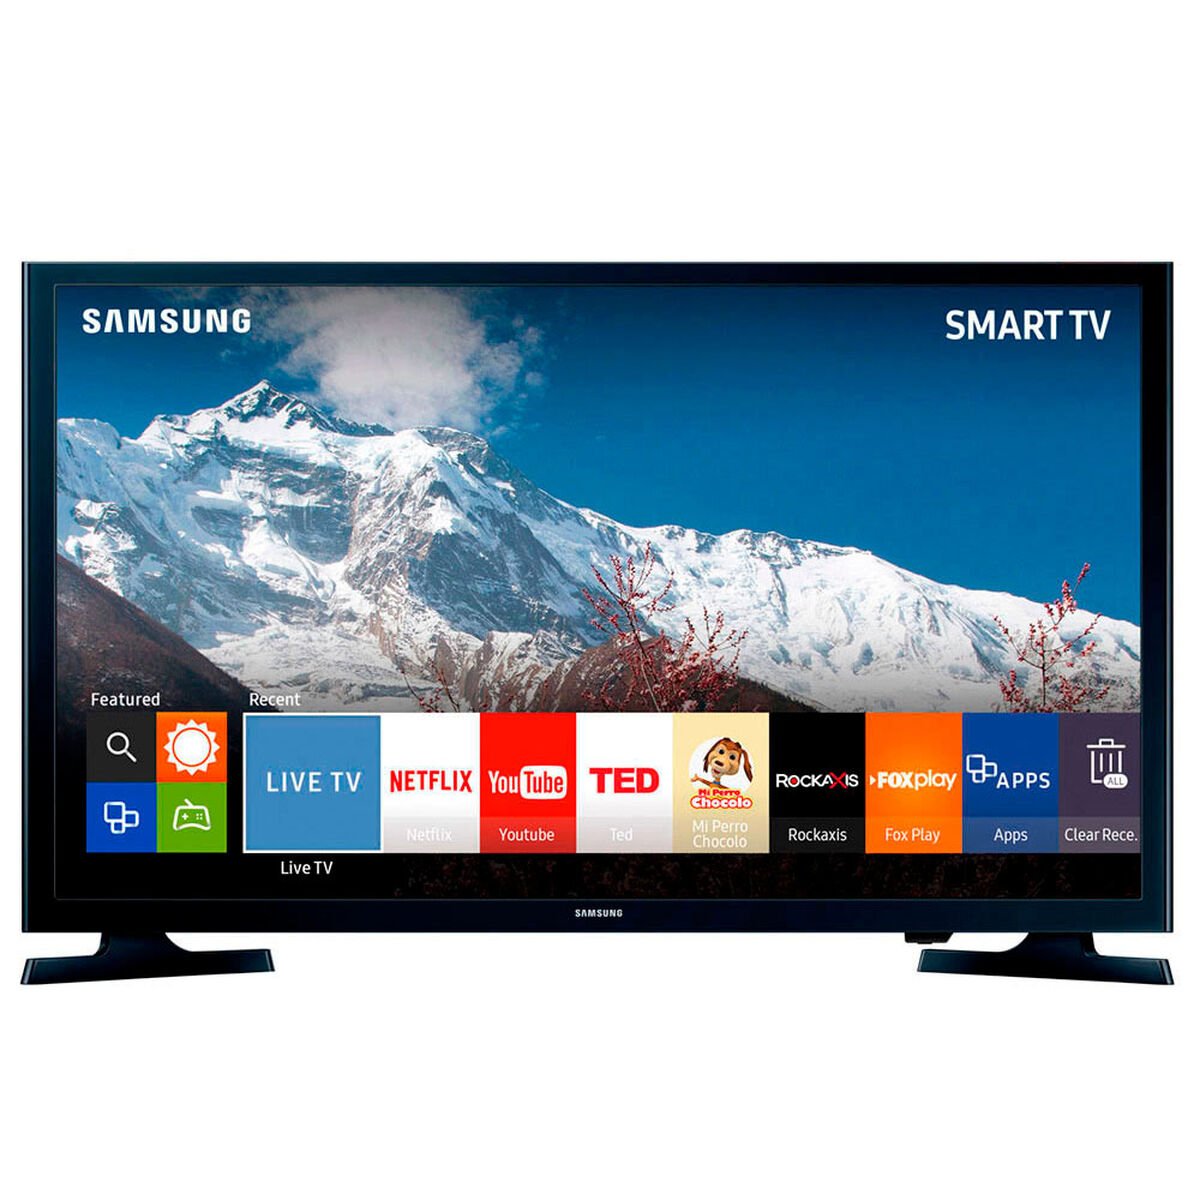 Samsung led 32 Smart TV. Led телевизор Samsung ue40j5200. Samsung Smart TV 40. Самсунг led 40 смарт ТВ.